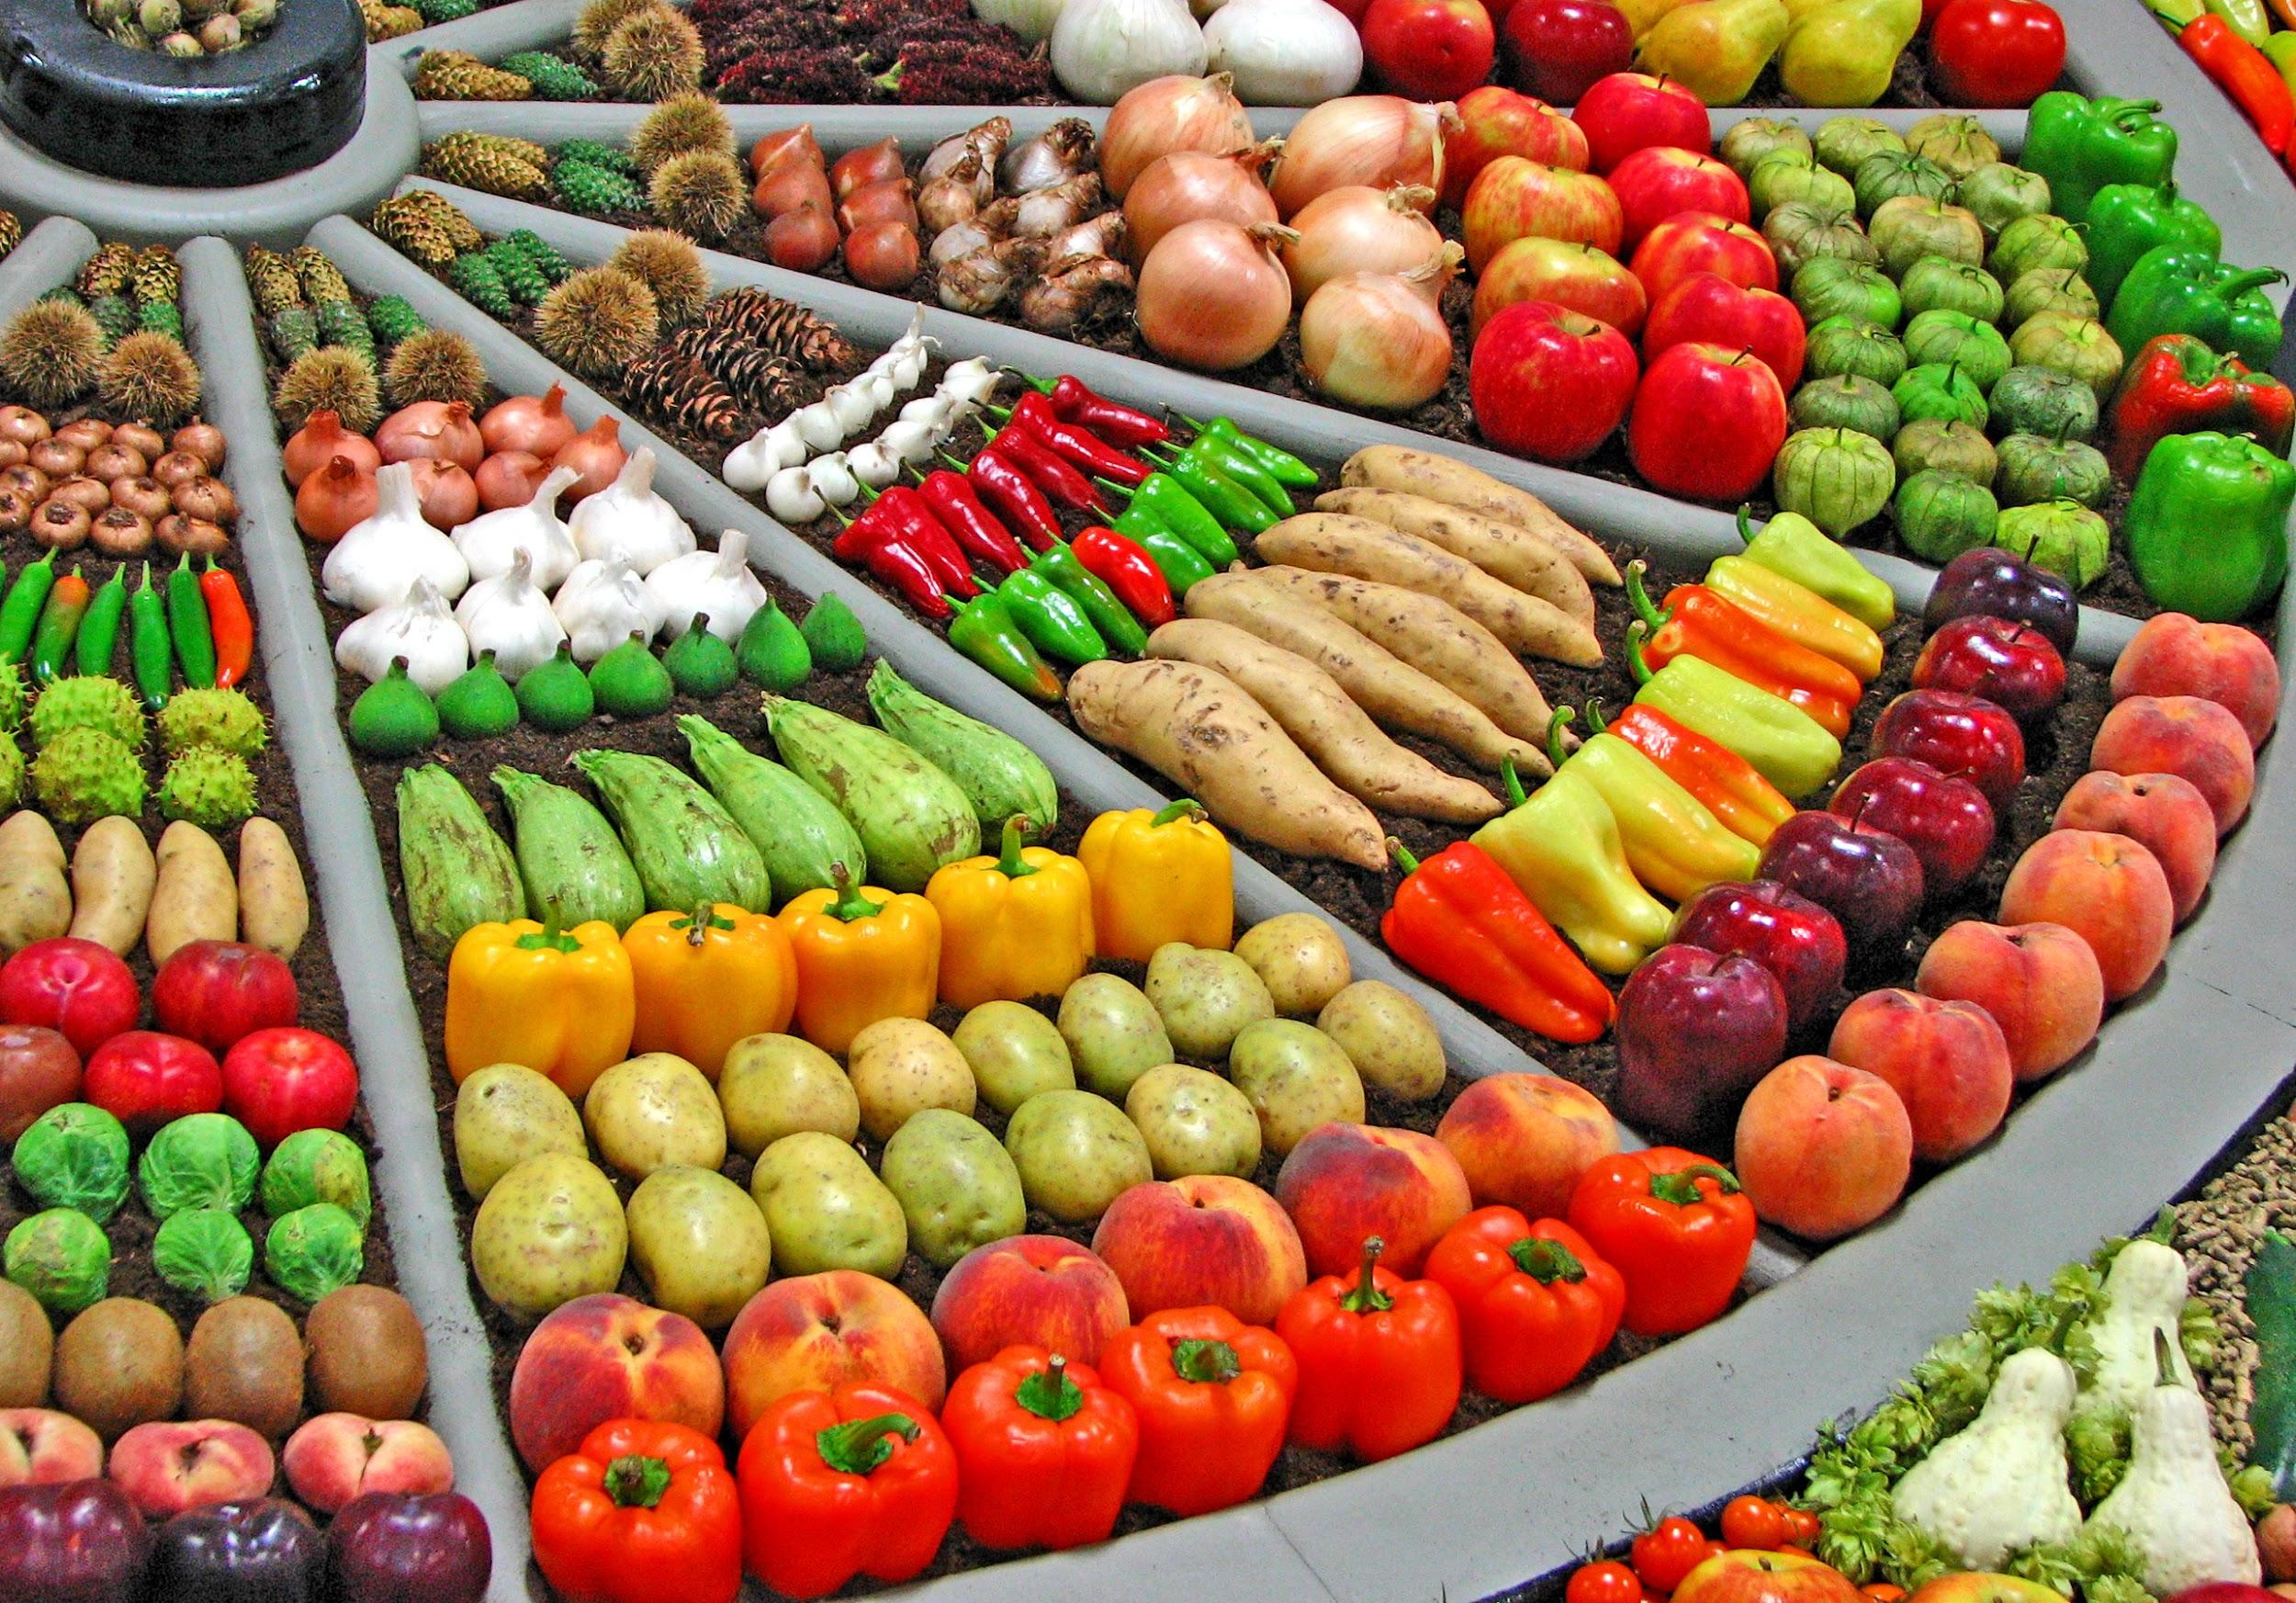 На прилавках магазинов лежат отборные овощи. Мева-сабзавот кластер. Выкладка овощей и фруктов. Красивая выкладка овощей и фруктов. Прилавок с фруктами.